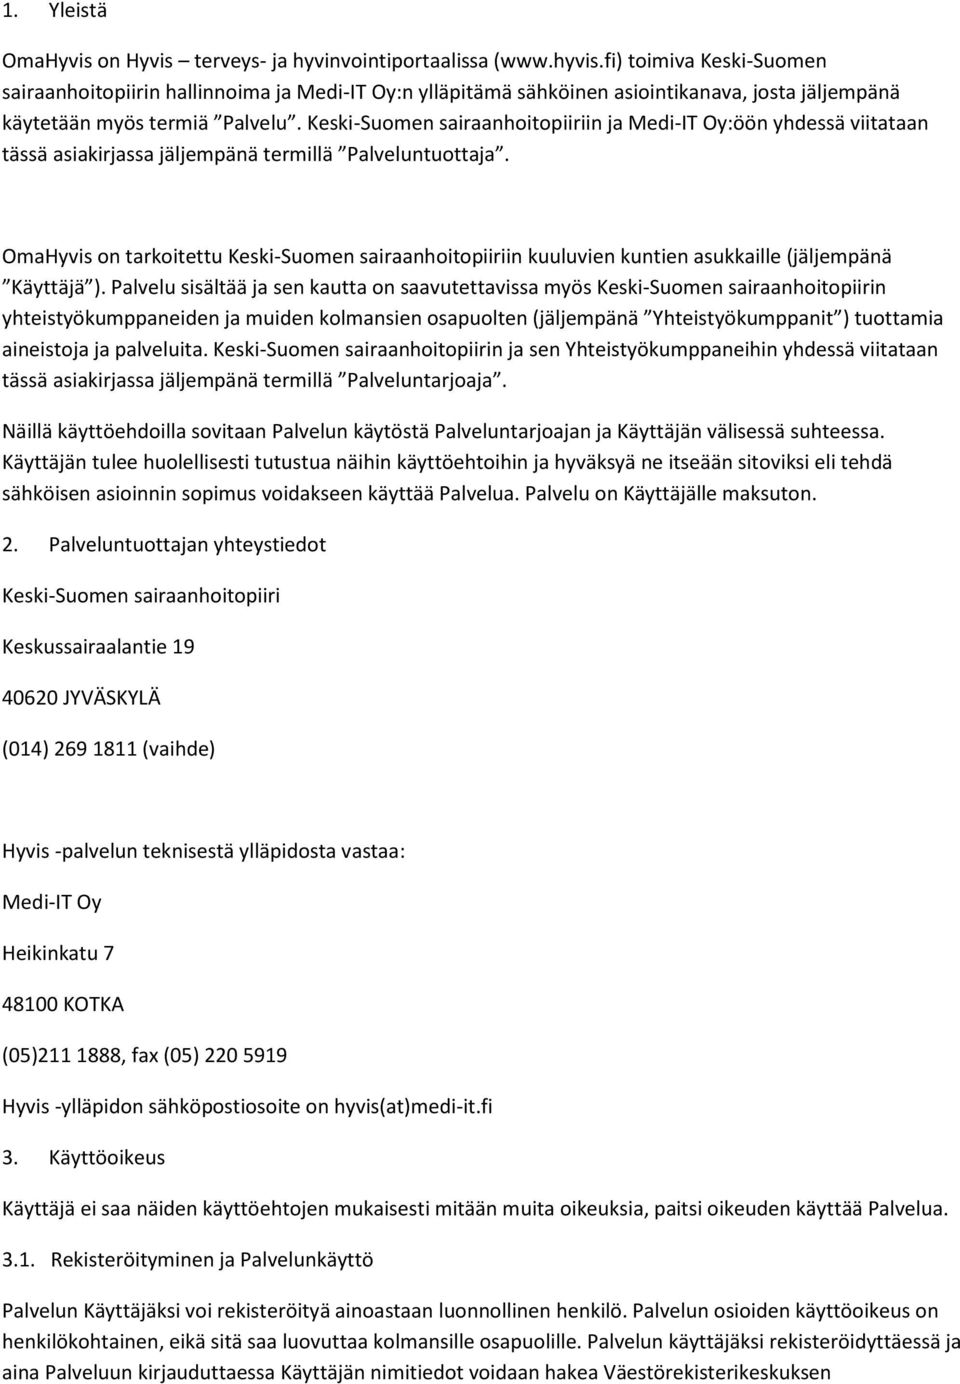 Keski-Suomen sairaanhoitopiiriin ja Medi-IT Oy:öön yhdessä viitataan tässä asiakirjassa jäljempänä termillä Palveluntuottaja.